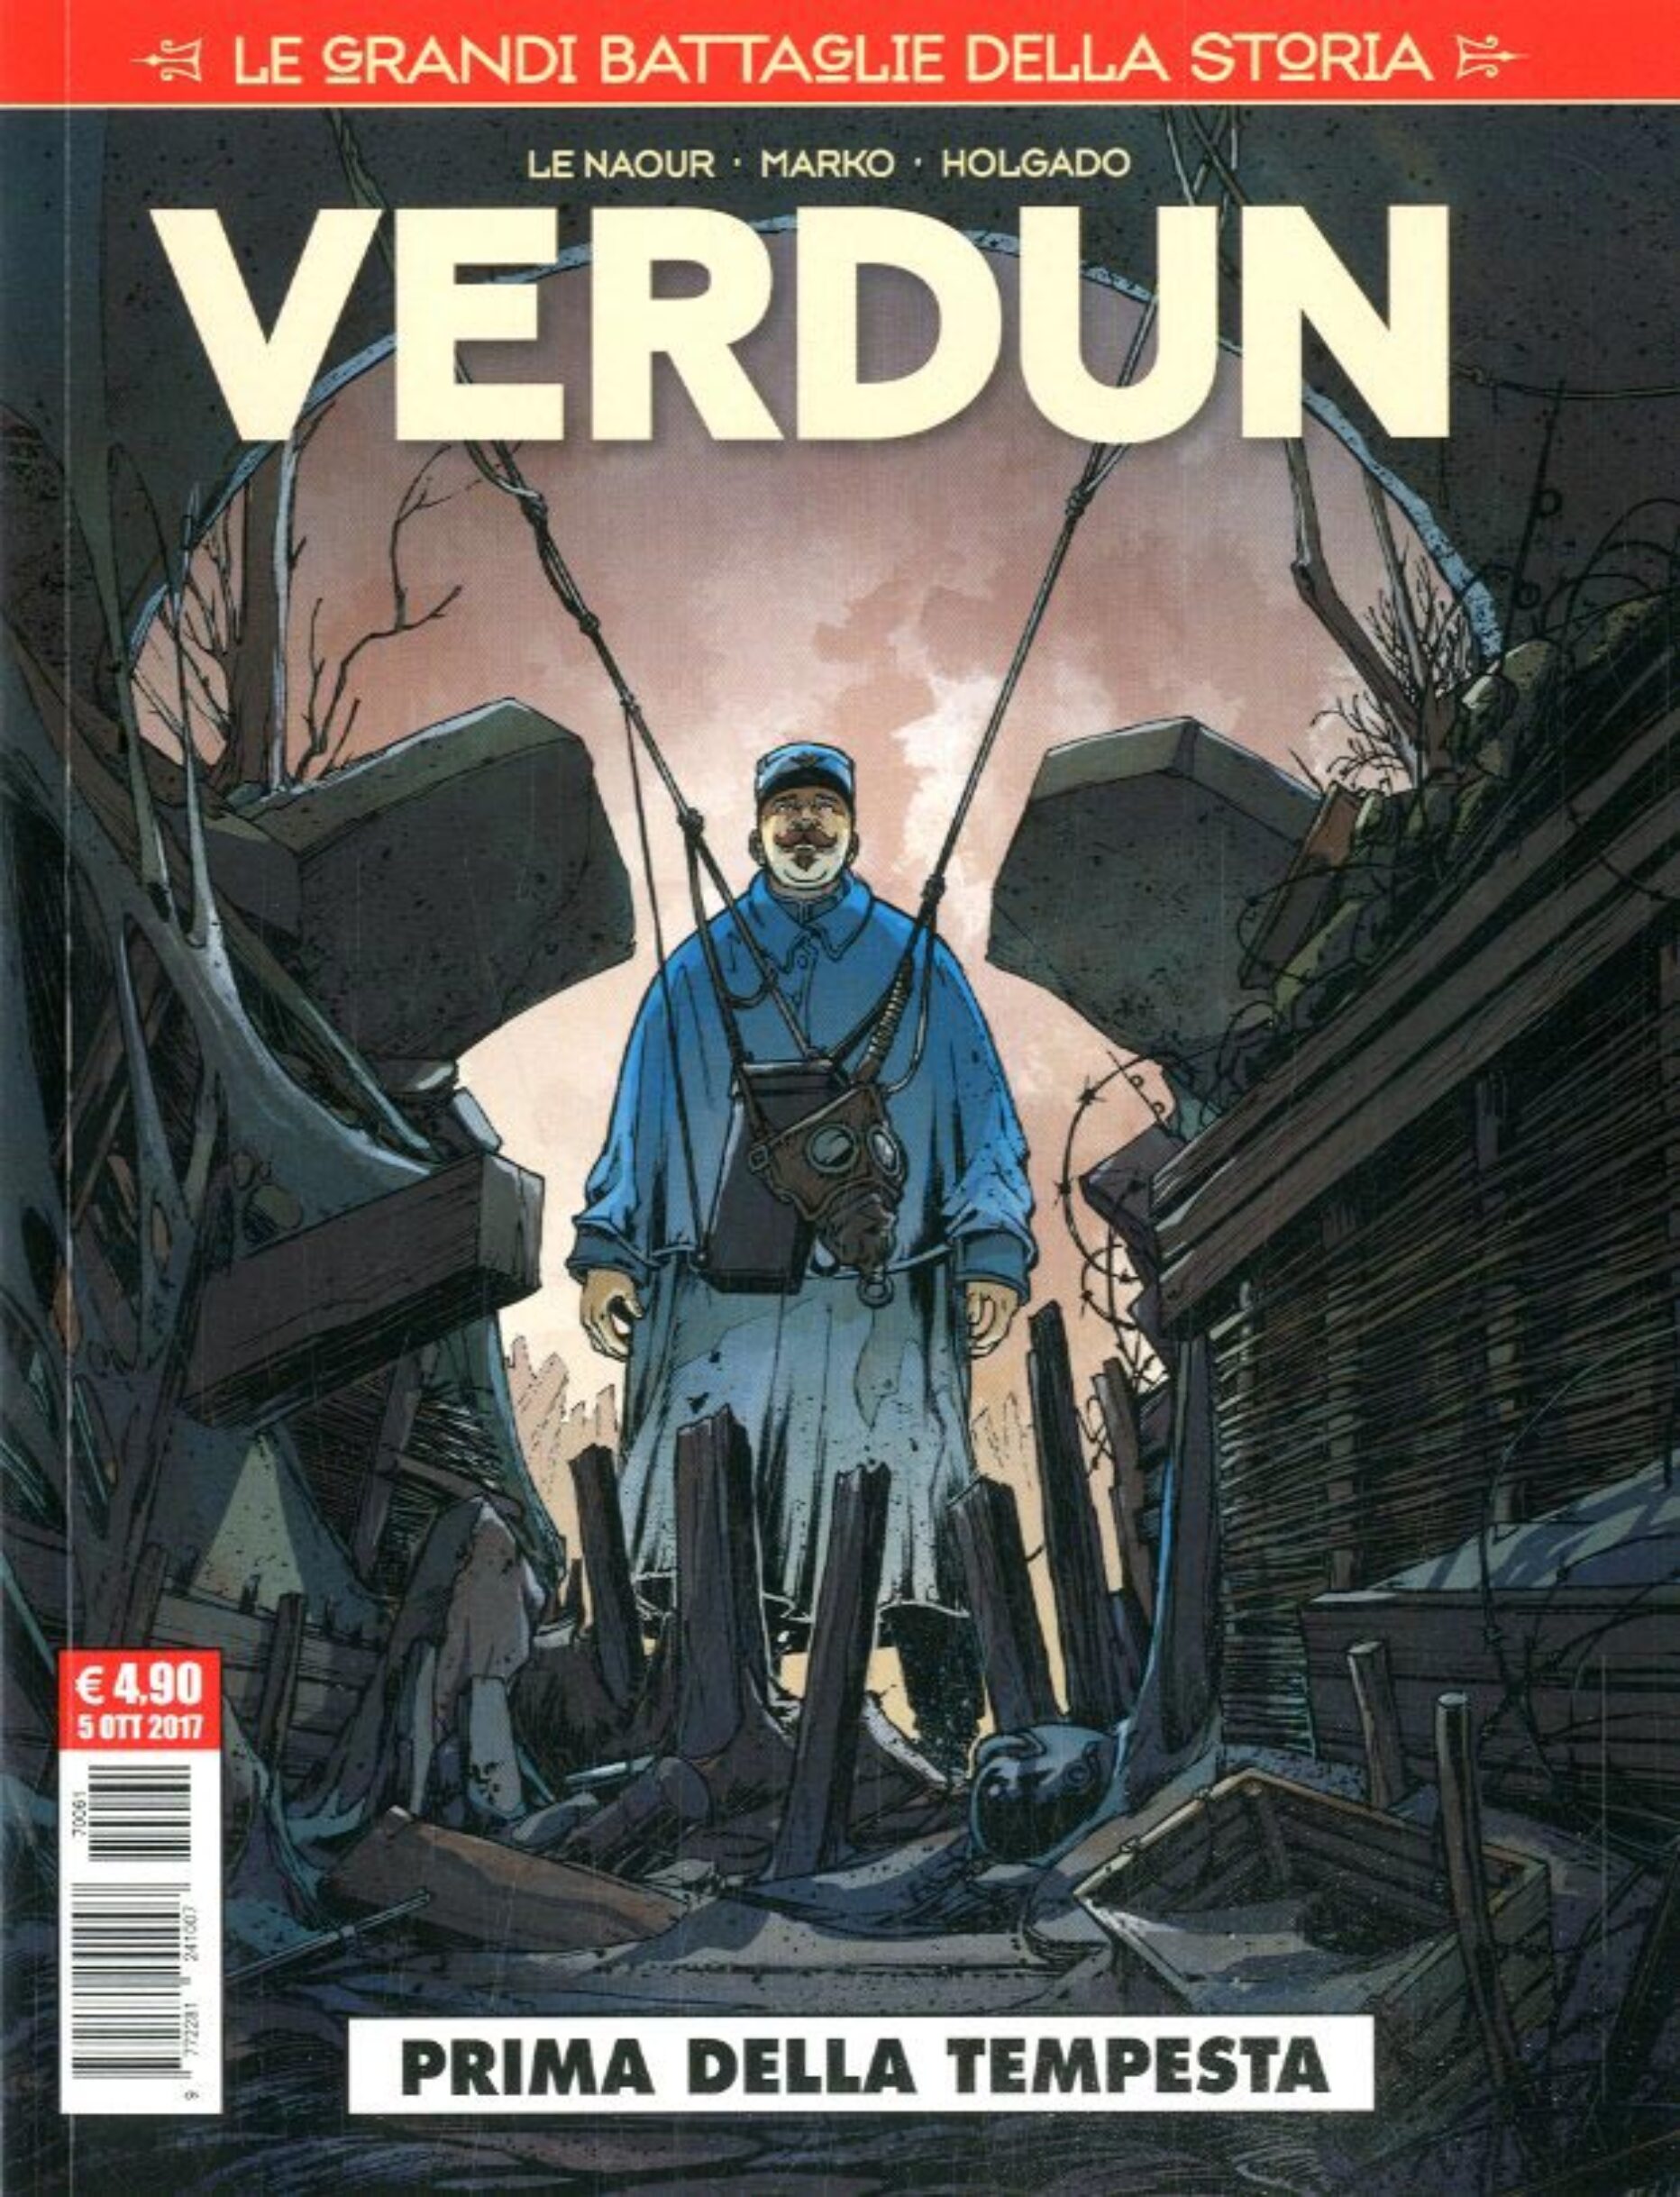 Le Grandi Battaglie della Storia #01: Verdun